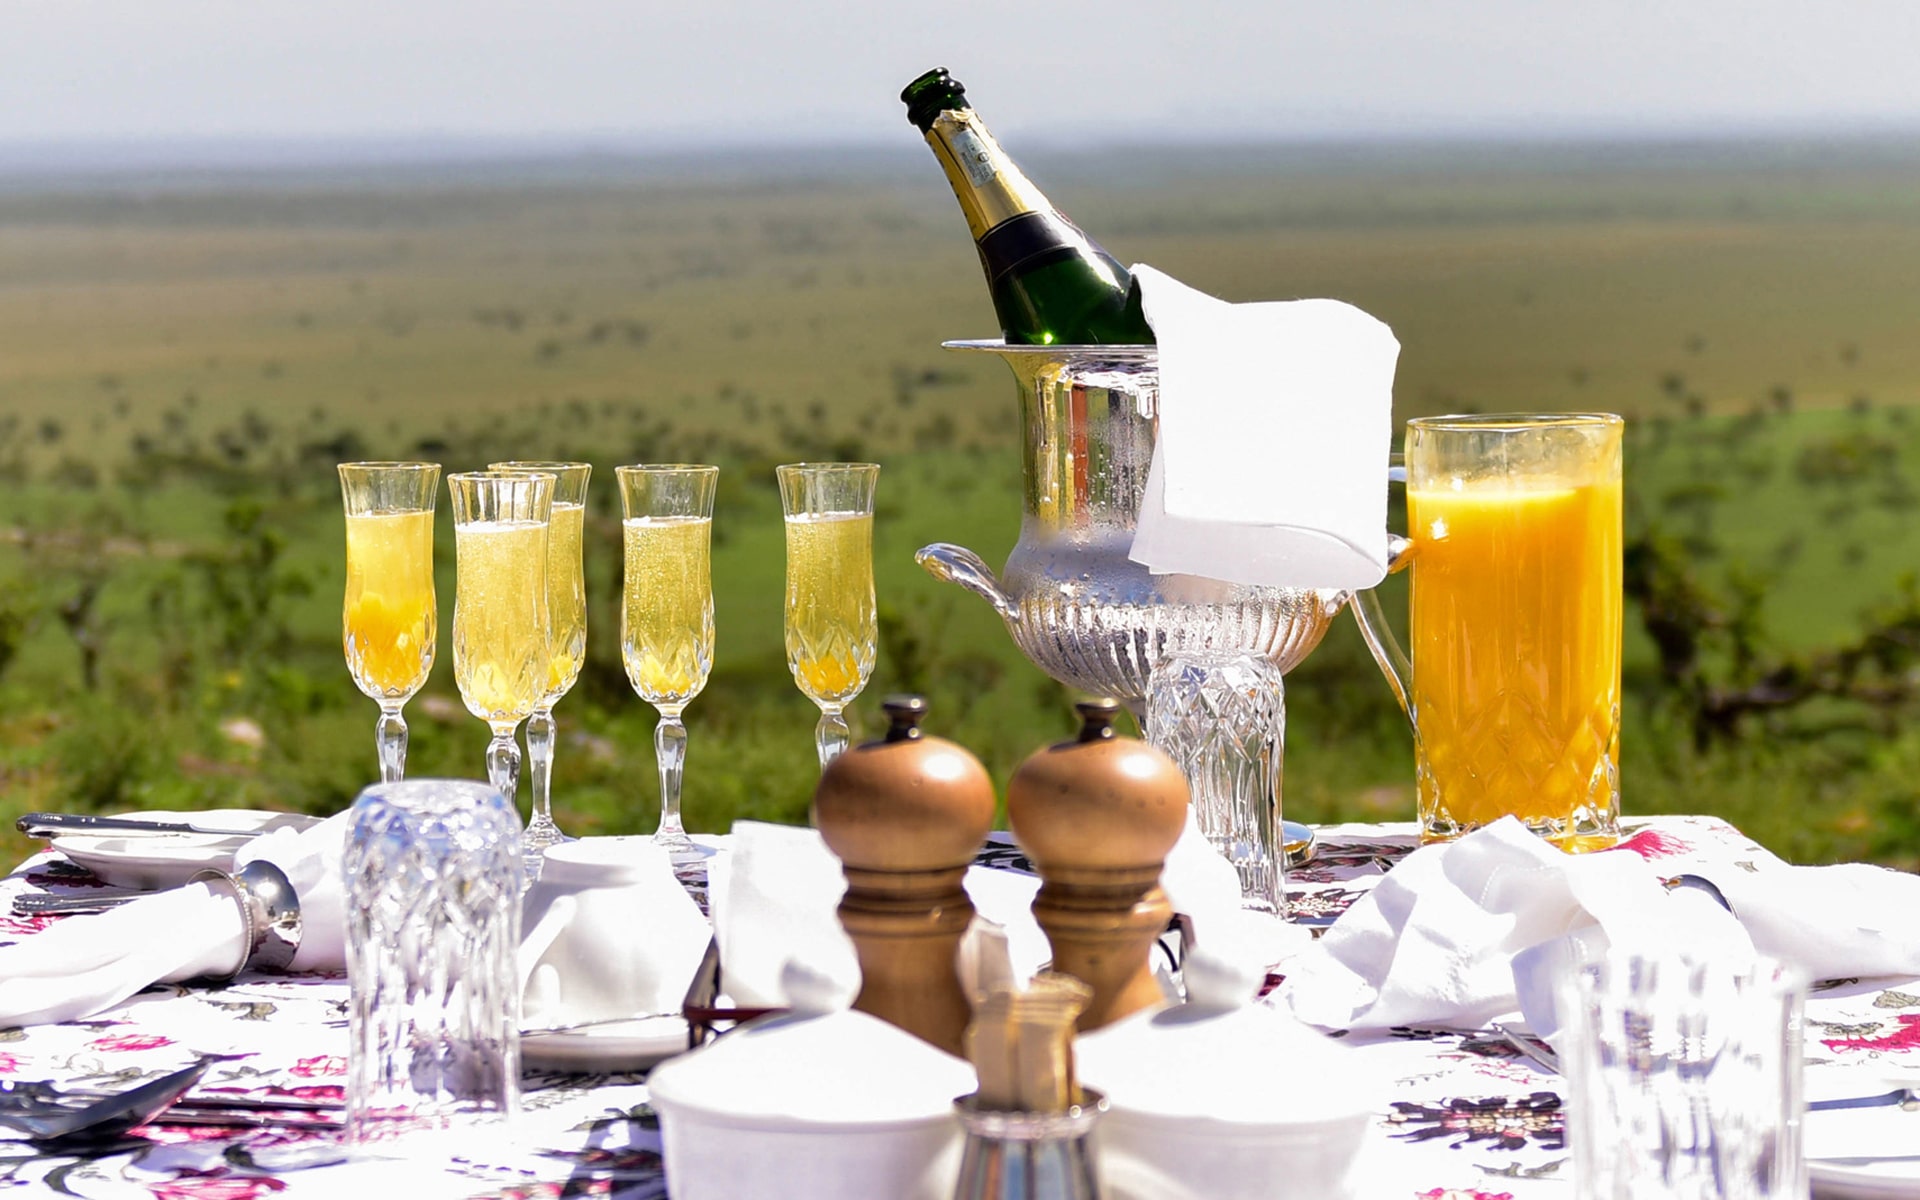 Bush Breakfast on a luxury African safari